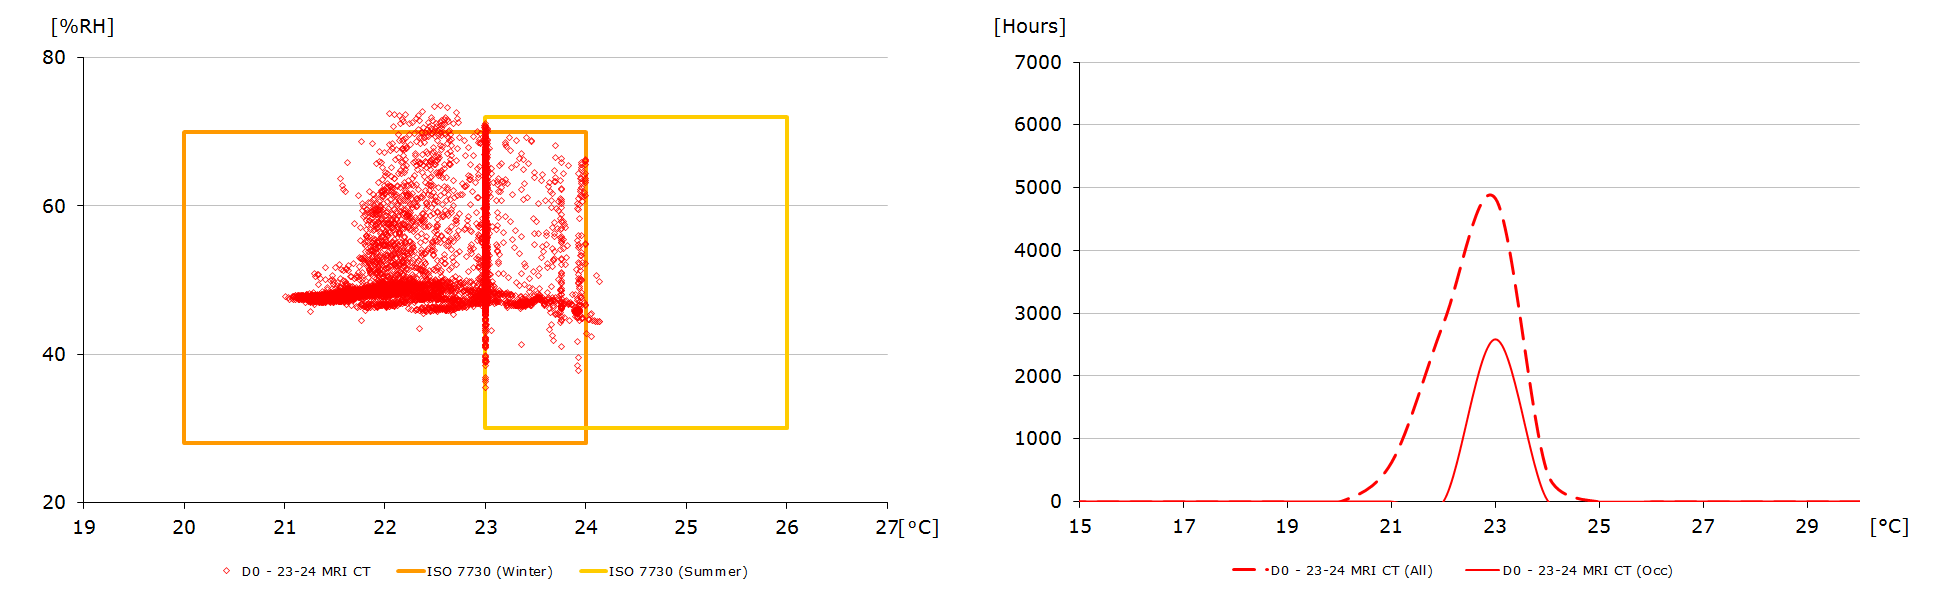 Beoordeling van uurlijkse luchtcondities in een jaar gedurende openingstijden (links). Frequentie-verdeling van de binnentemperatuur in een jaar, zowel voor alle uren als de openingsuren. Beide voor een volledig geconditioneerd gebouw.